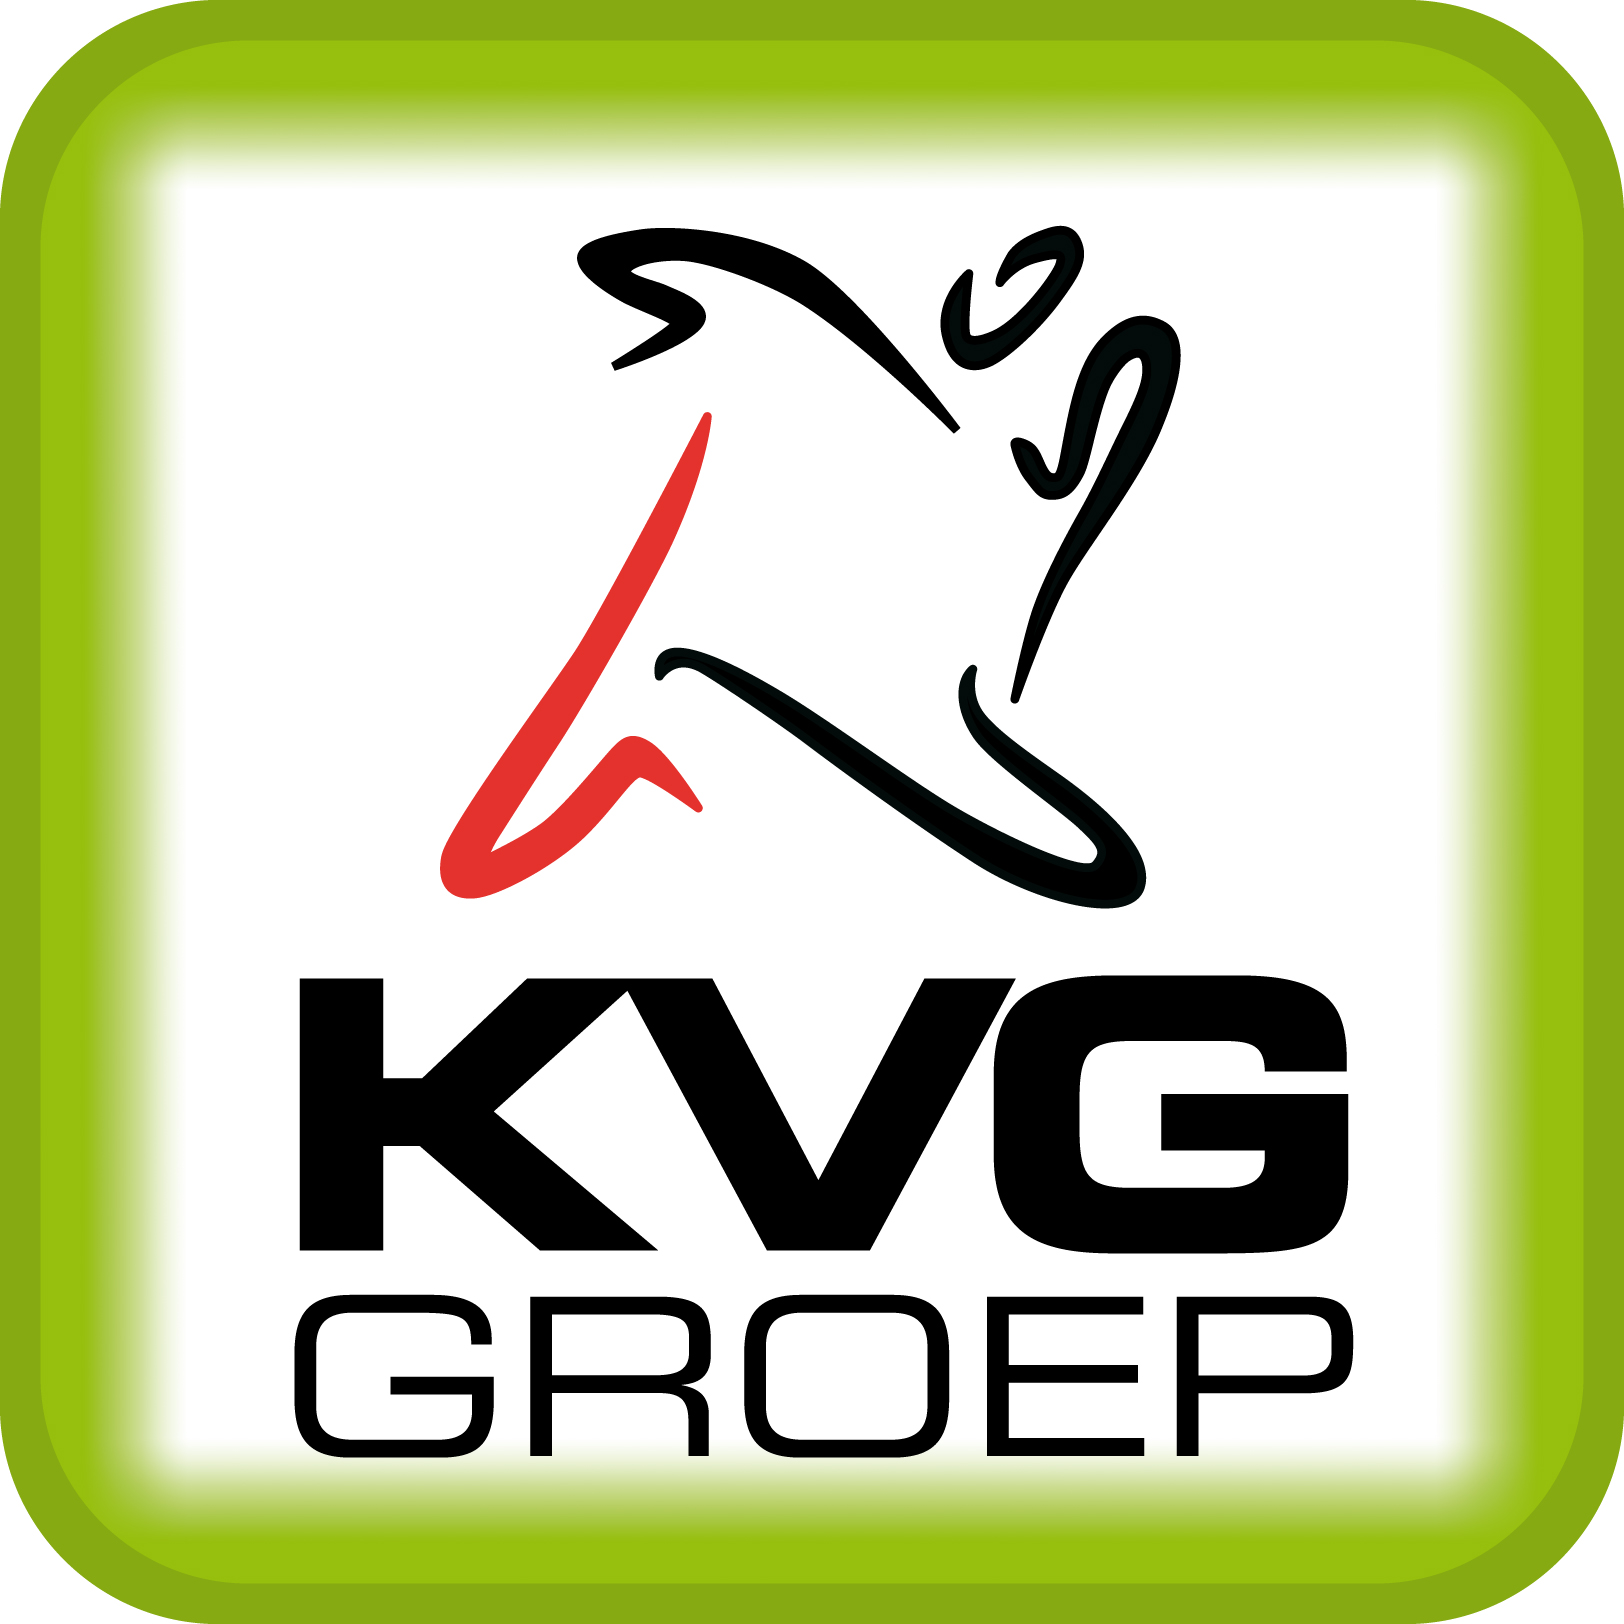 KVG groep - logo